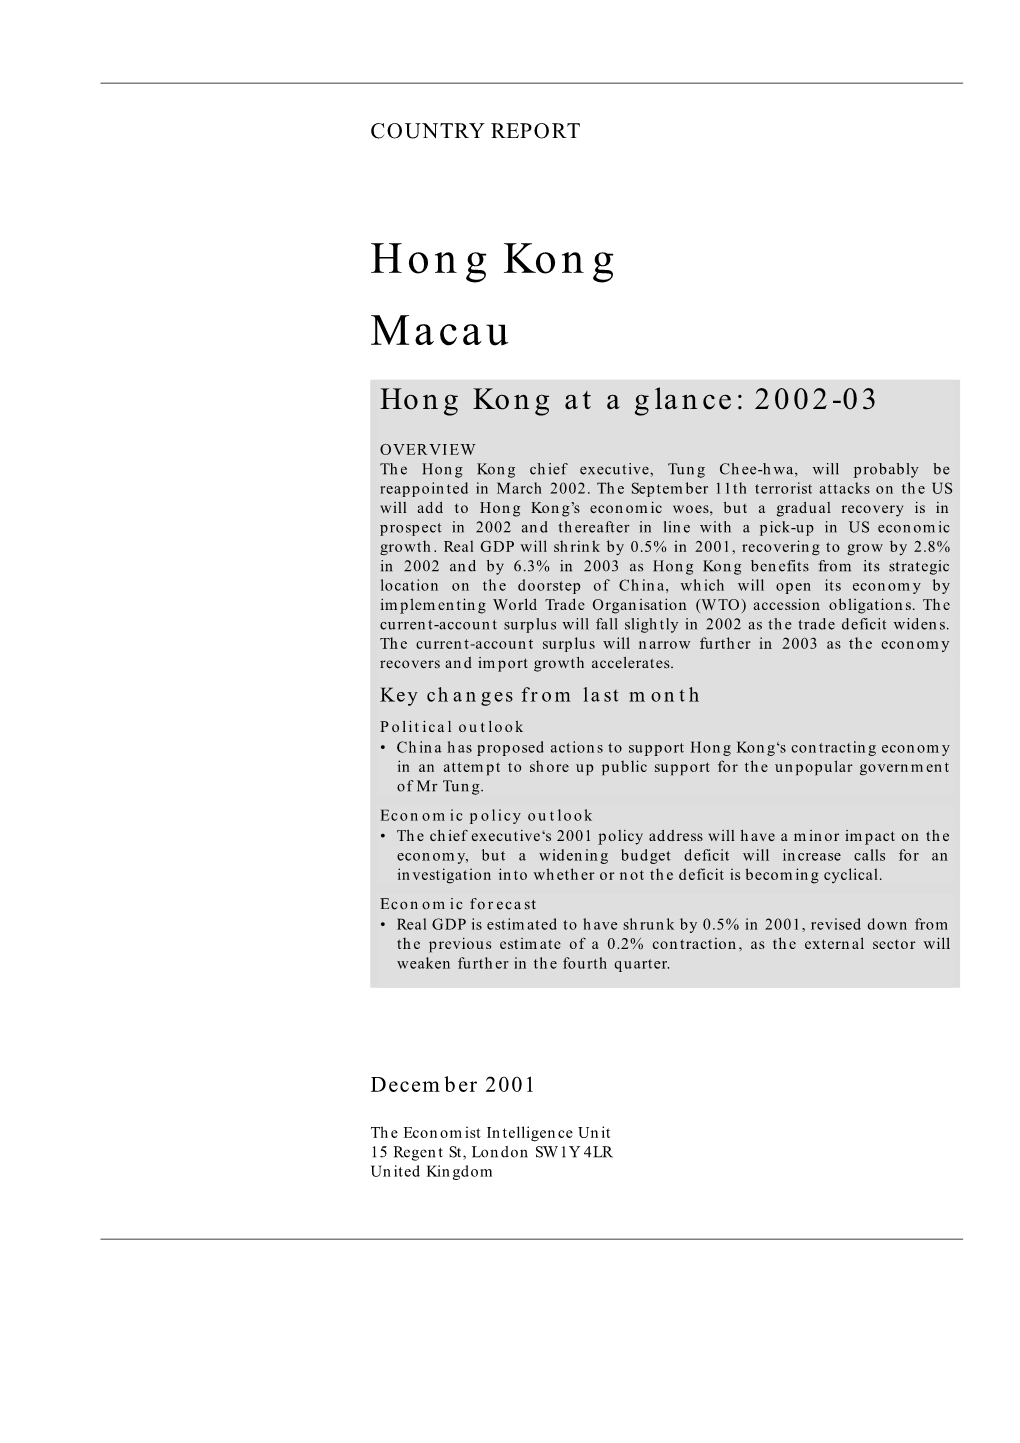 Hong Kong Macau Hong Kong at a Glance: 2002-03